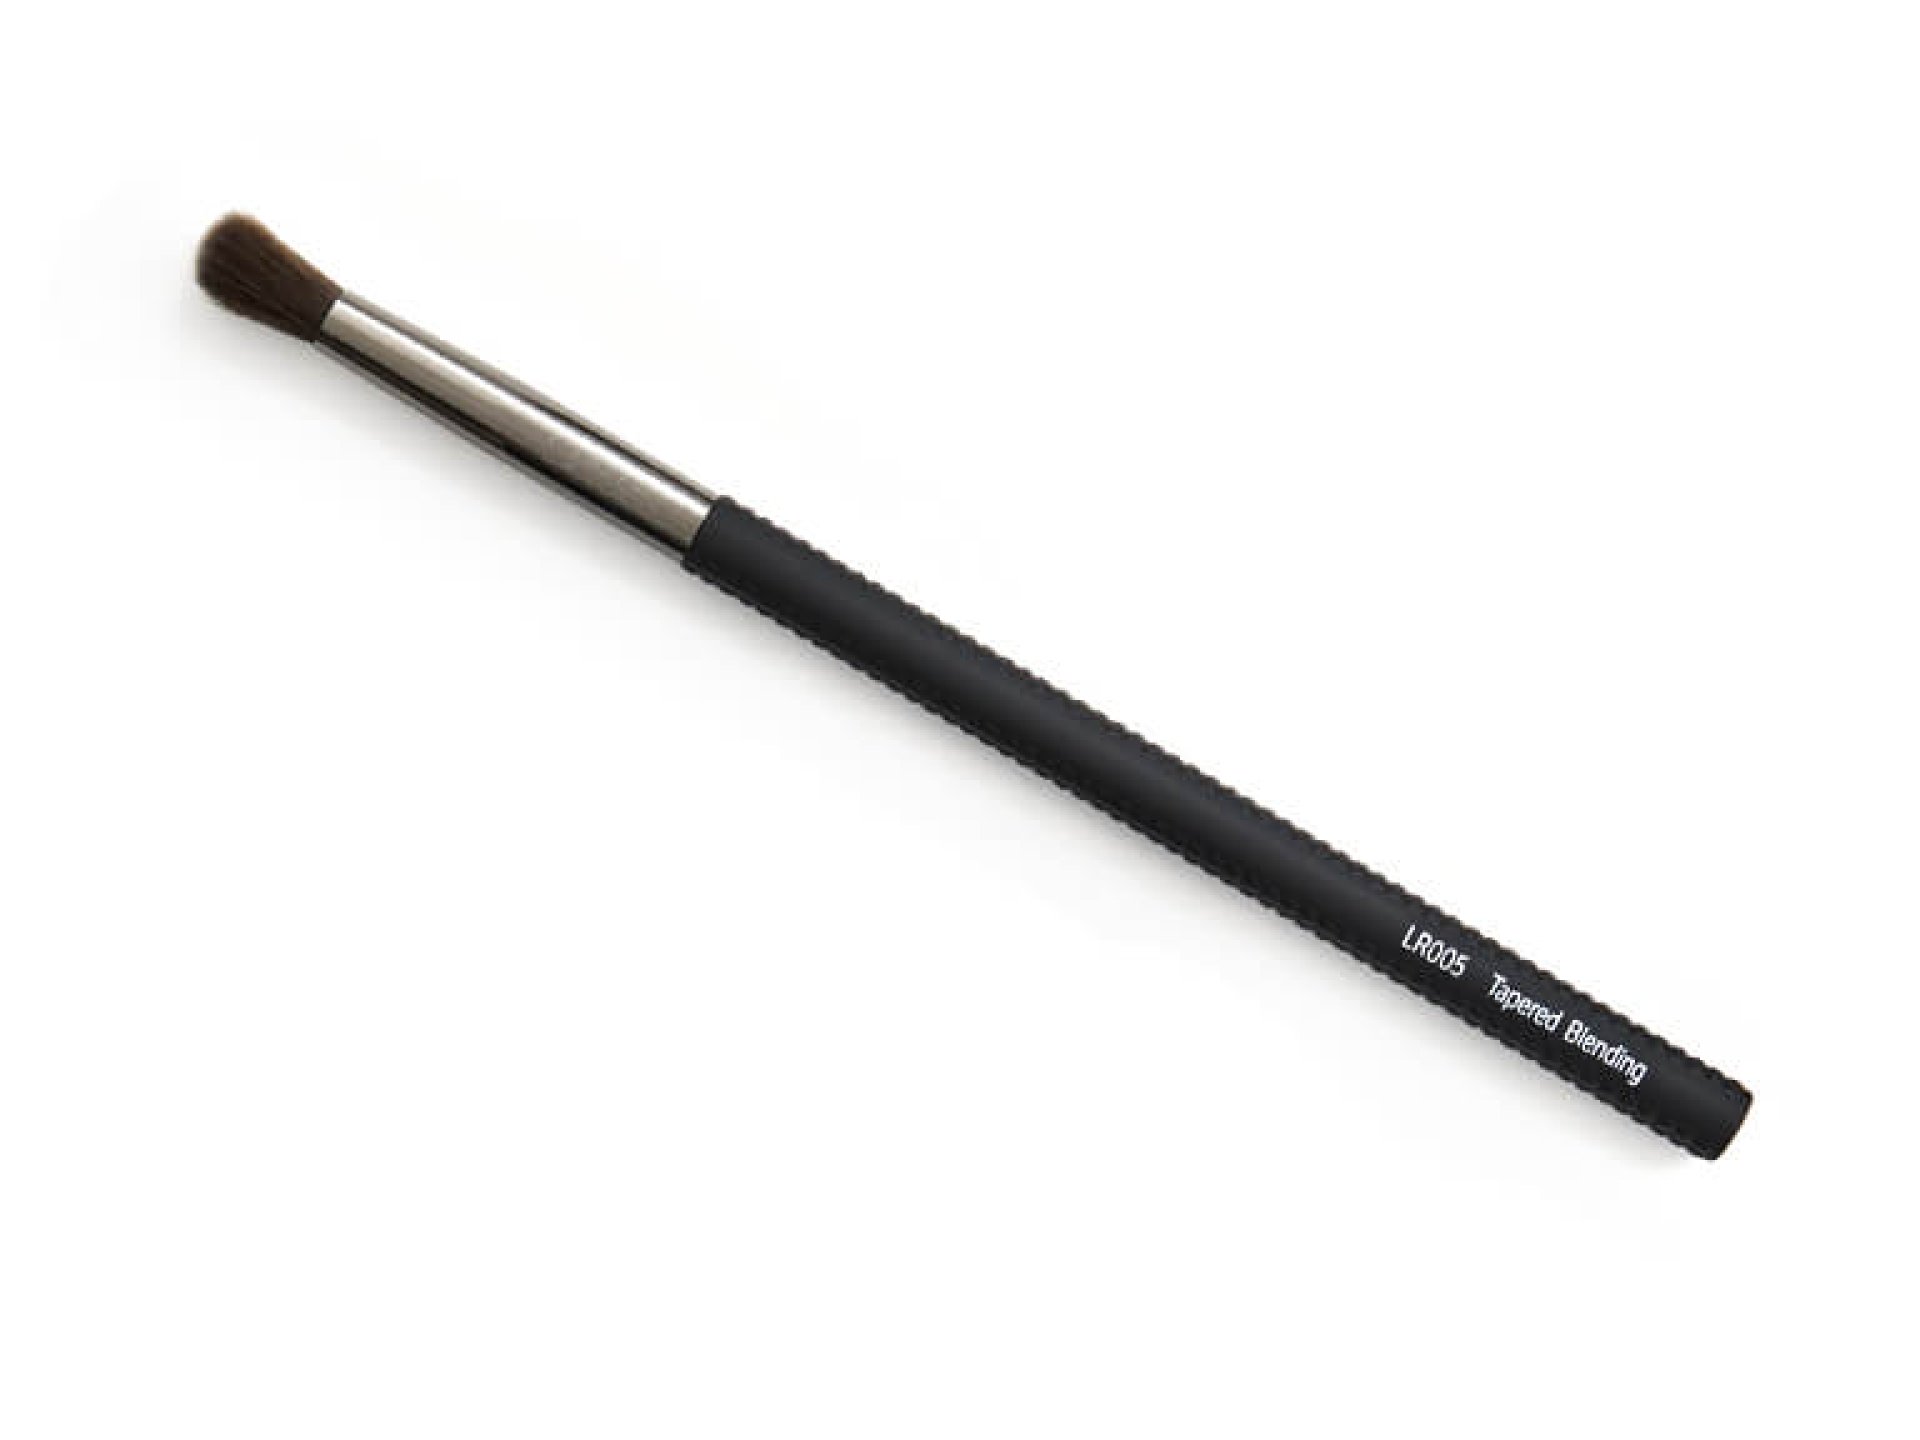 LARUCE BEAUTY LR005 Tapered Blending Brush in Black